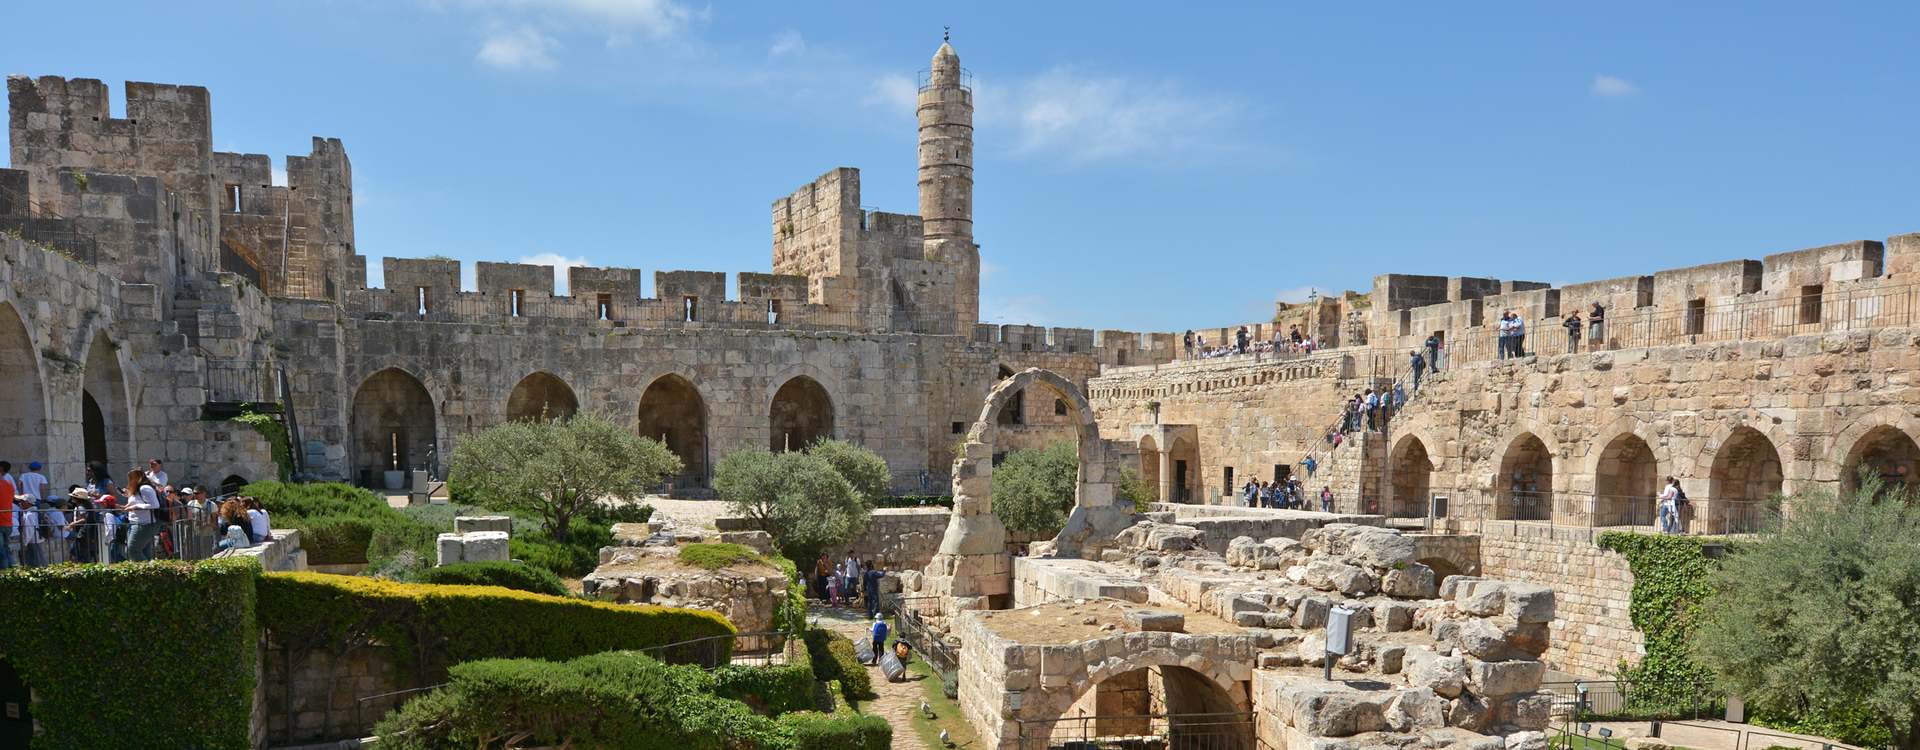 Музей «Башня Давида», Иерусалим